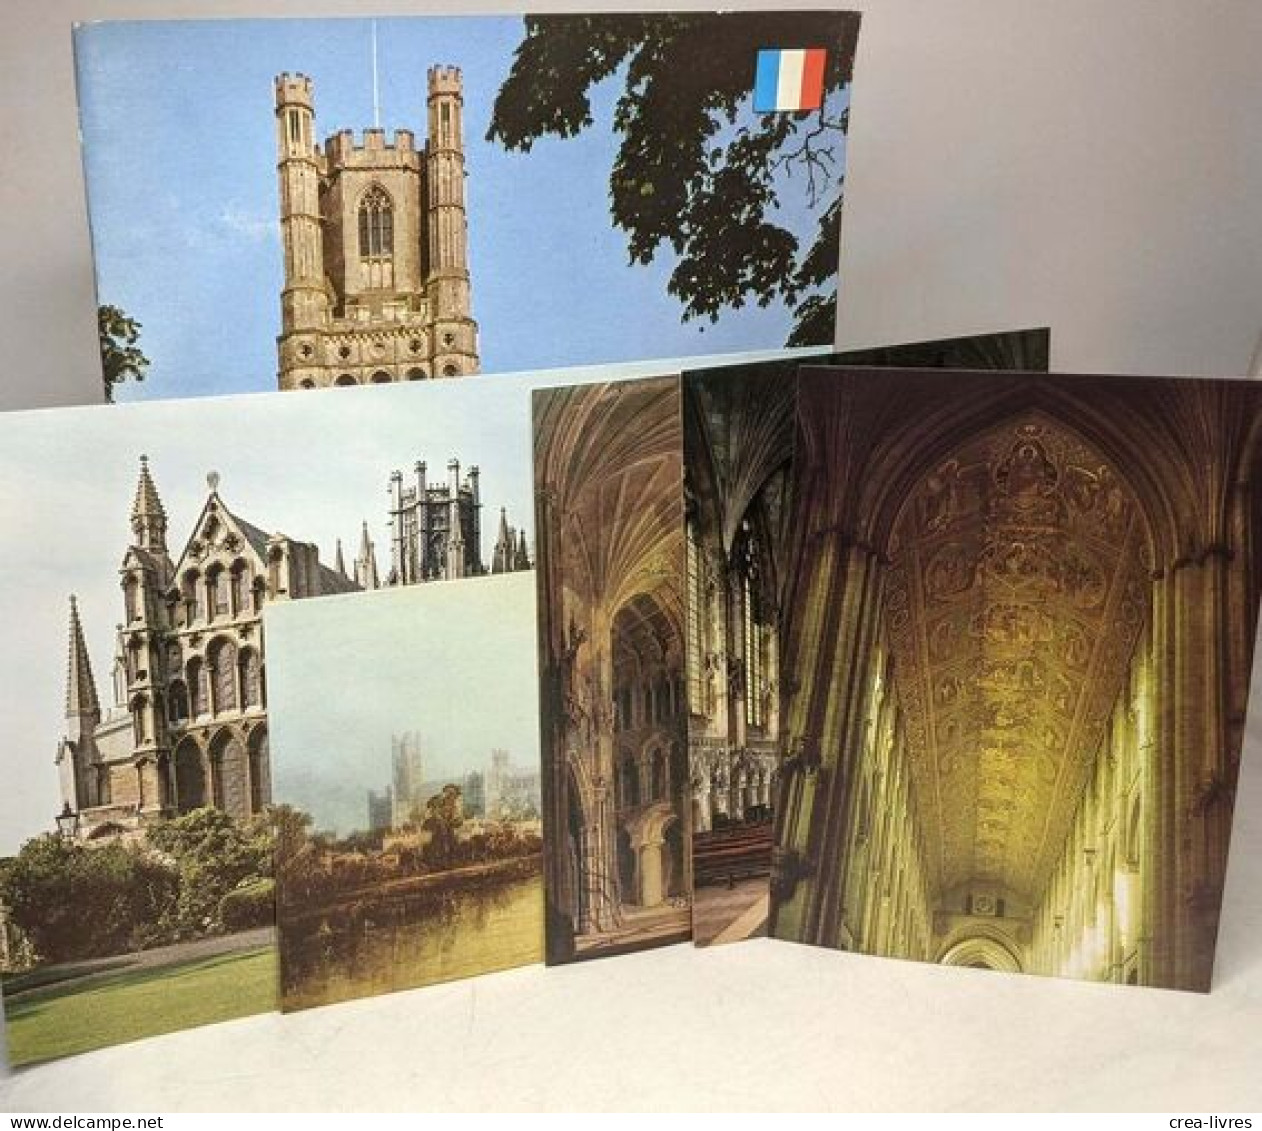 La Cathédrale D'Ely - Guide --- Avec Cartes Postales - Toerisme